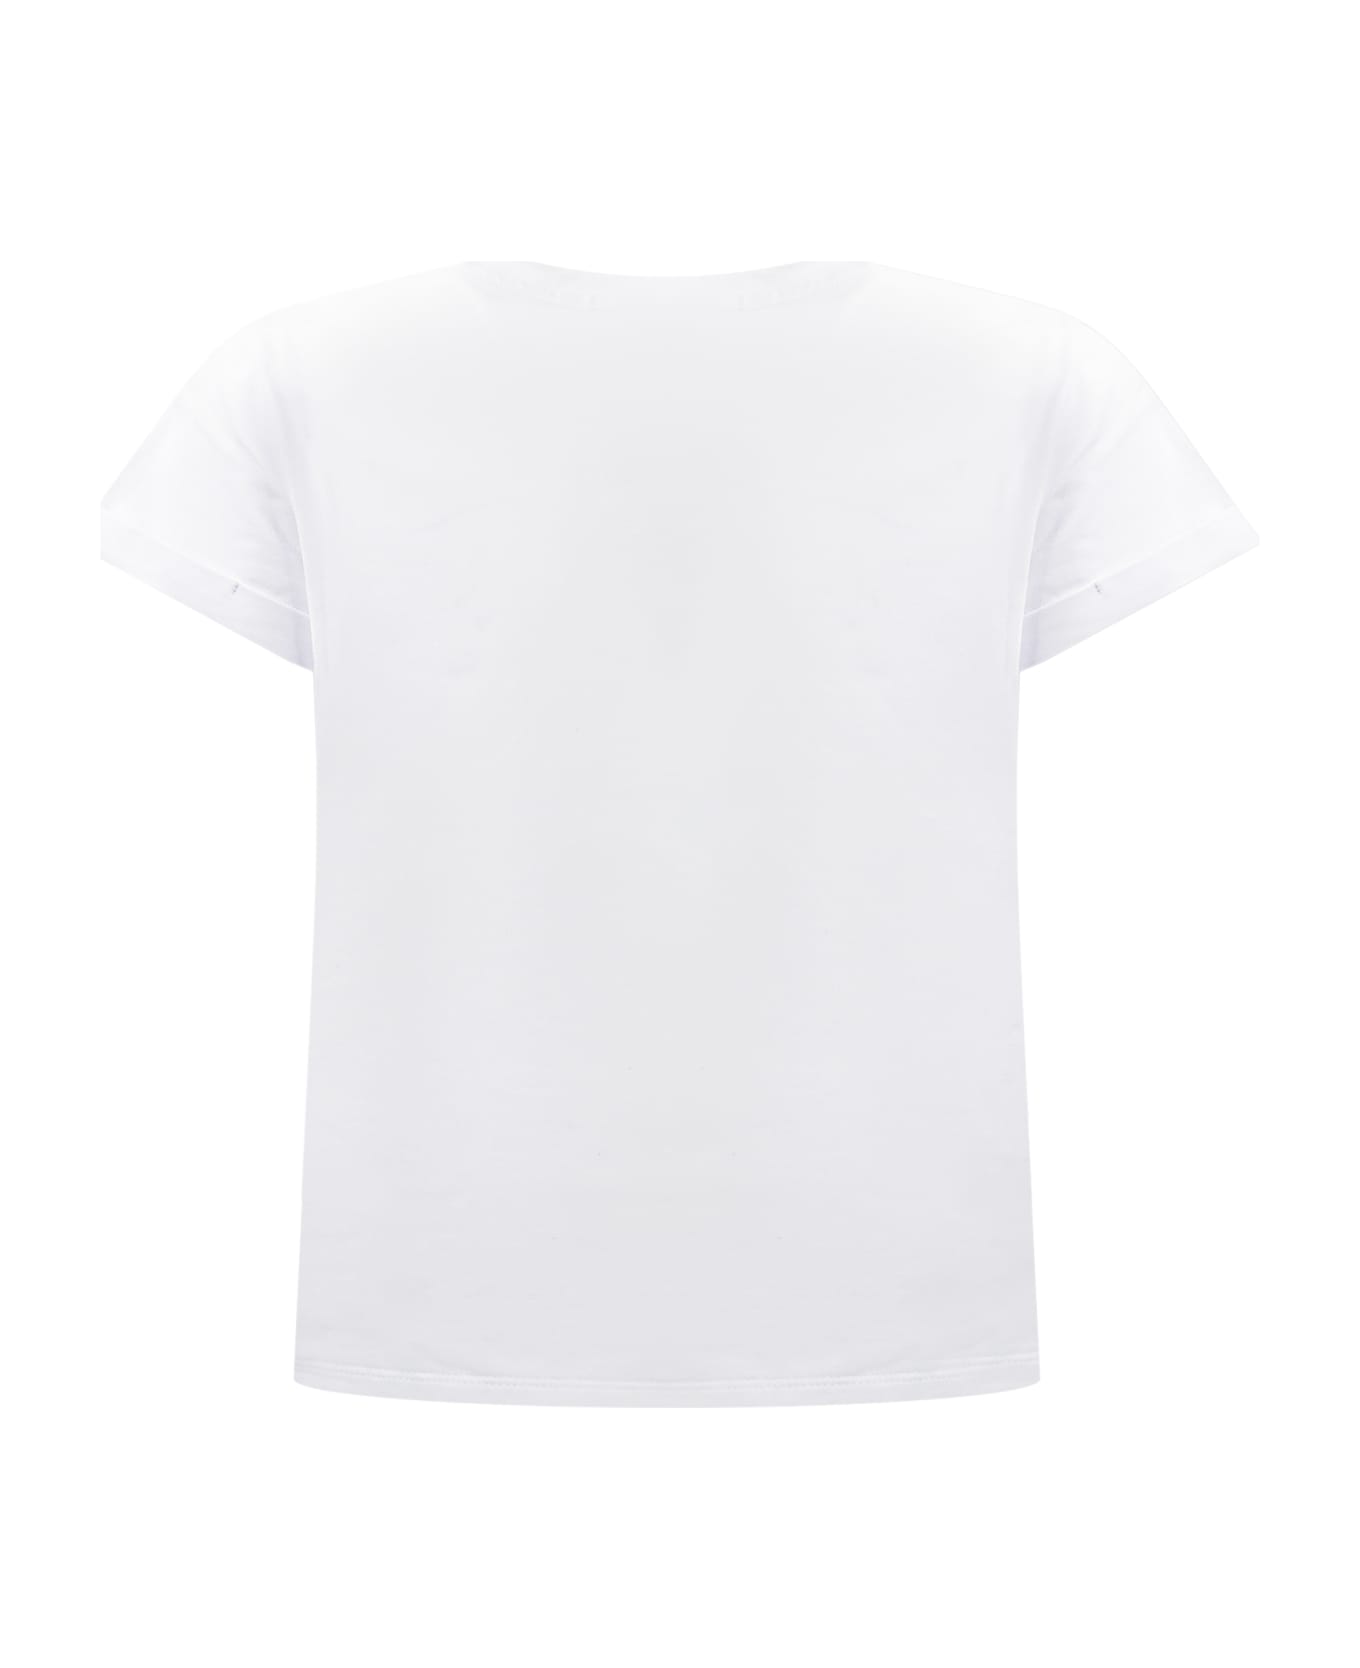 TwinSet Ice Cream T-shirt - ST.ICE CREAM Tシャツ＆ポロシャツ